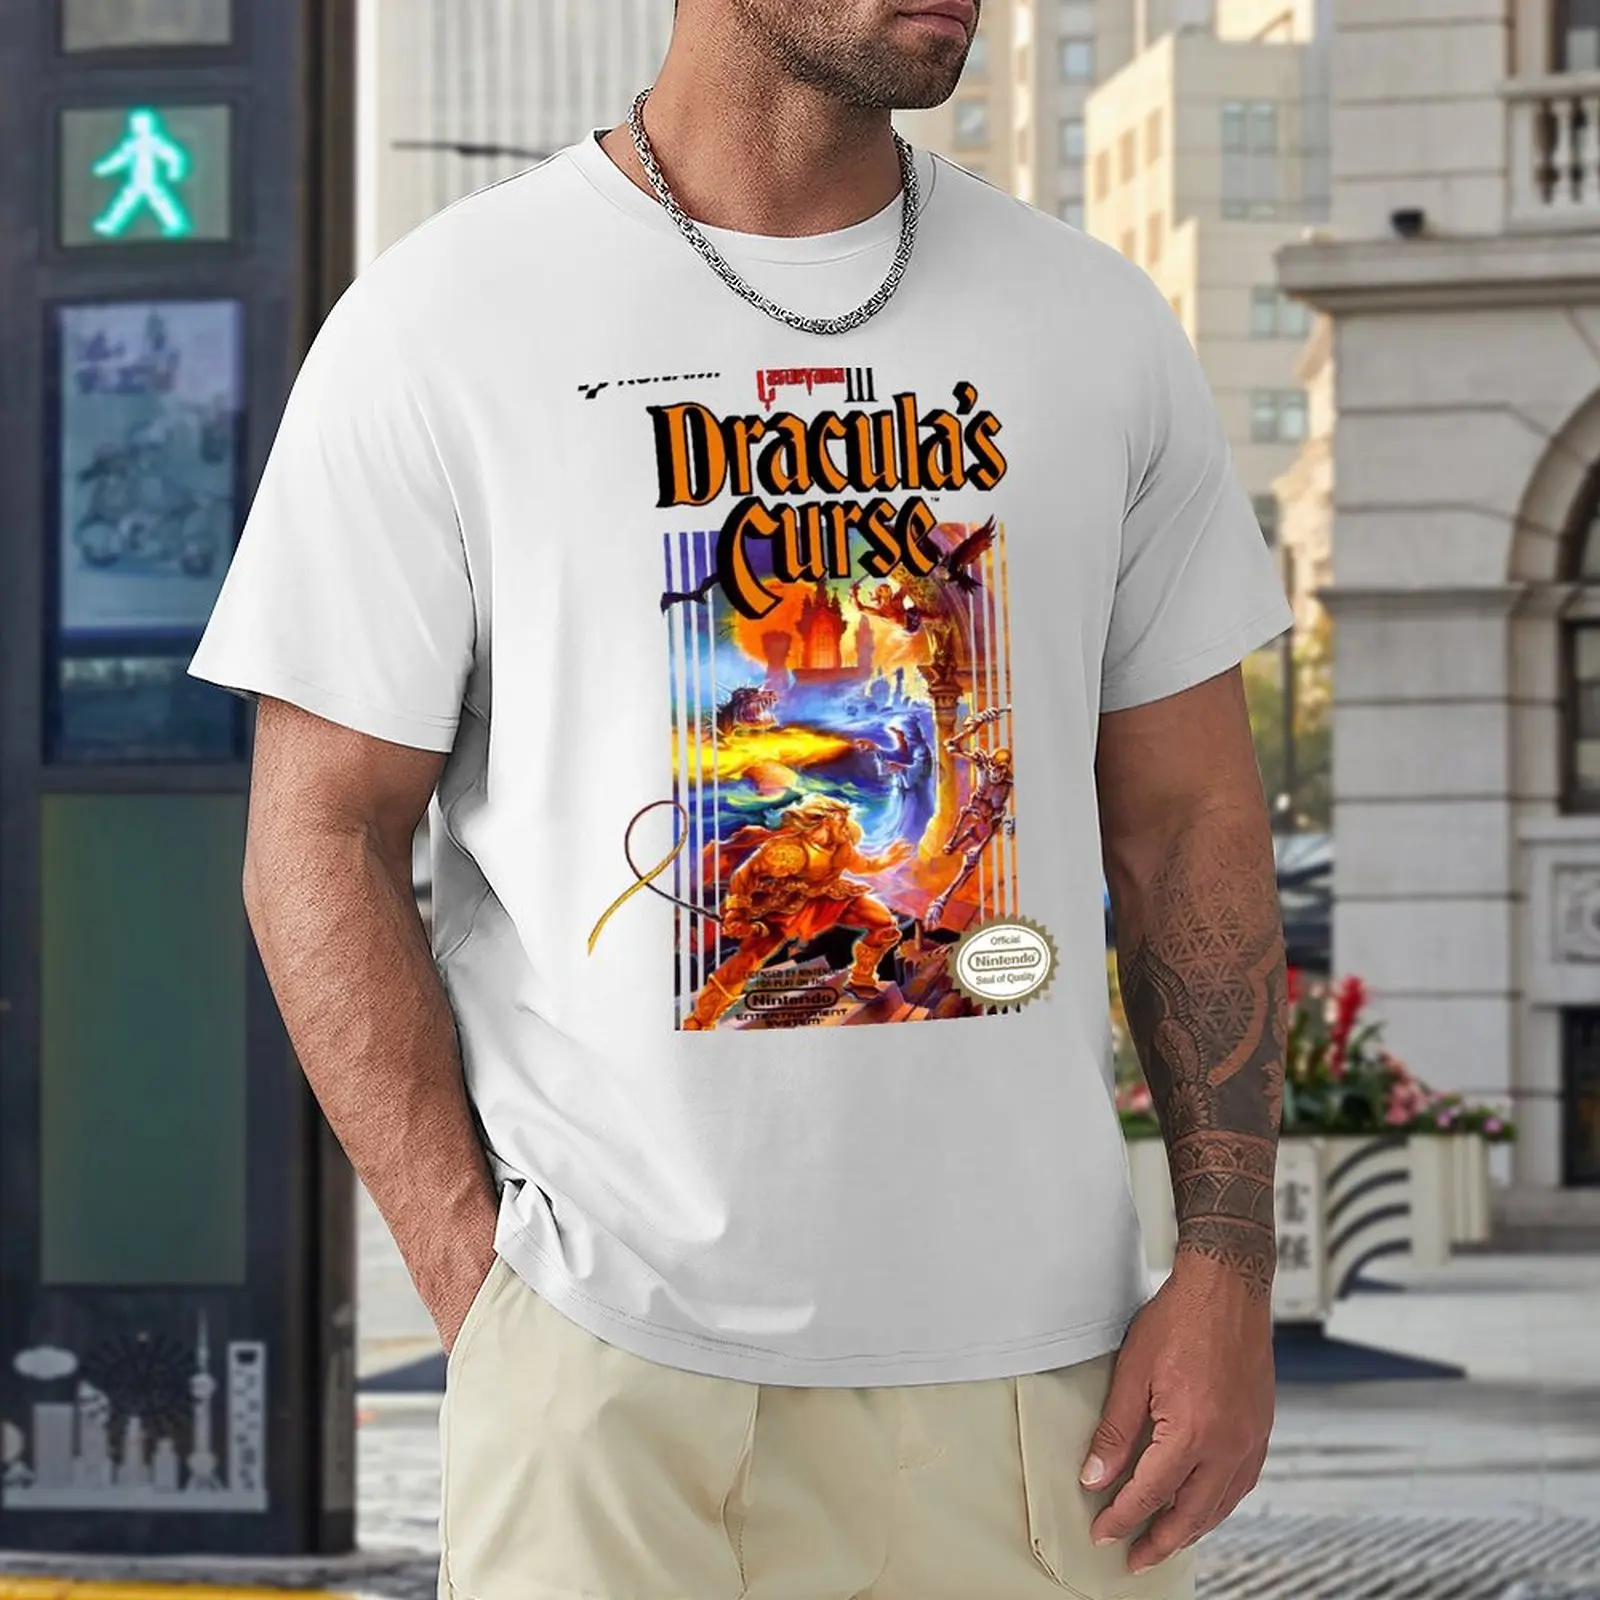 Футболка Castlevania 3, короткая эстетичная одежда, забавная футболка, мужские футболки большого и высокого размера. Изображение 4